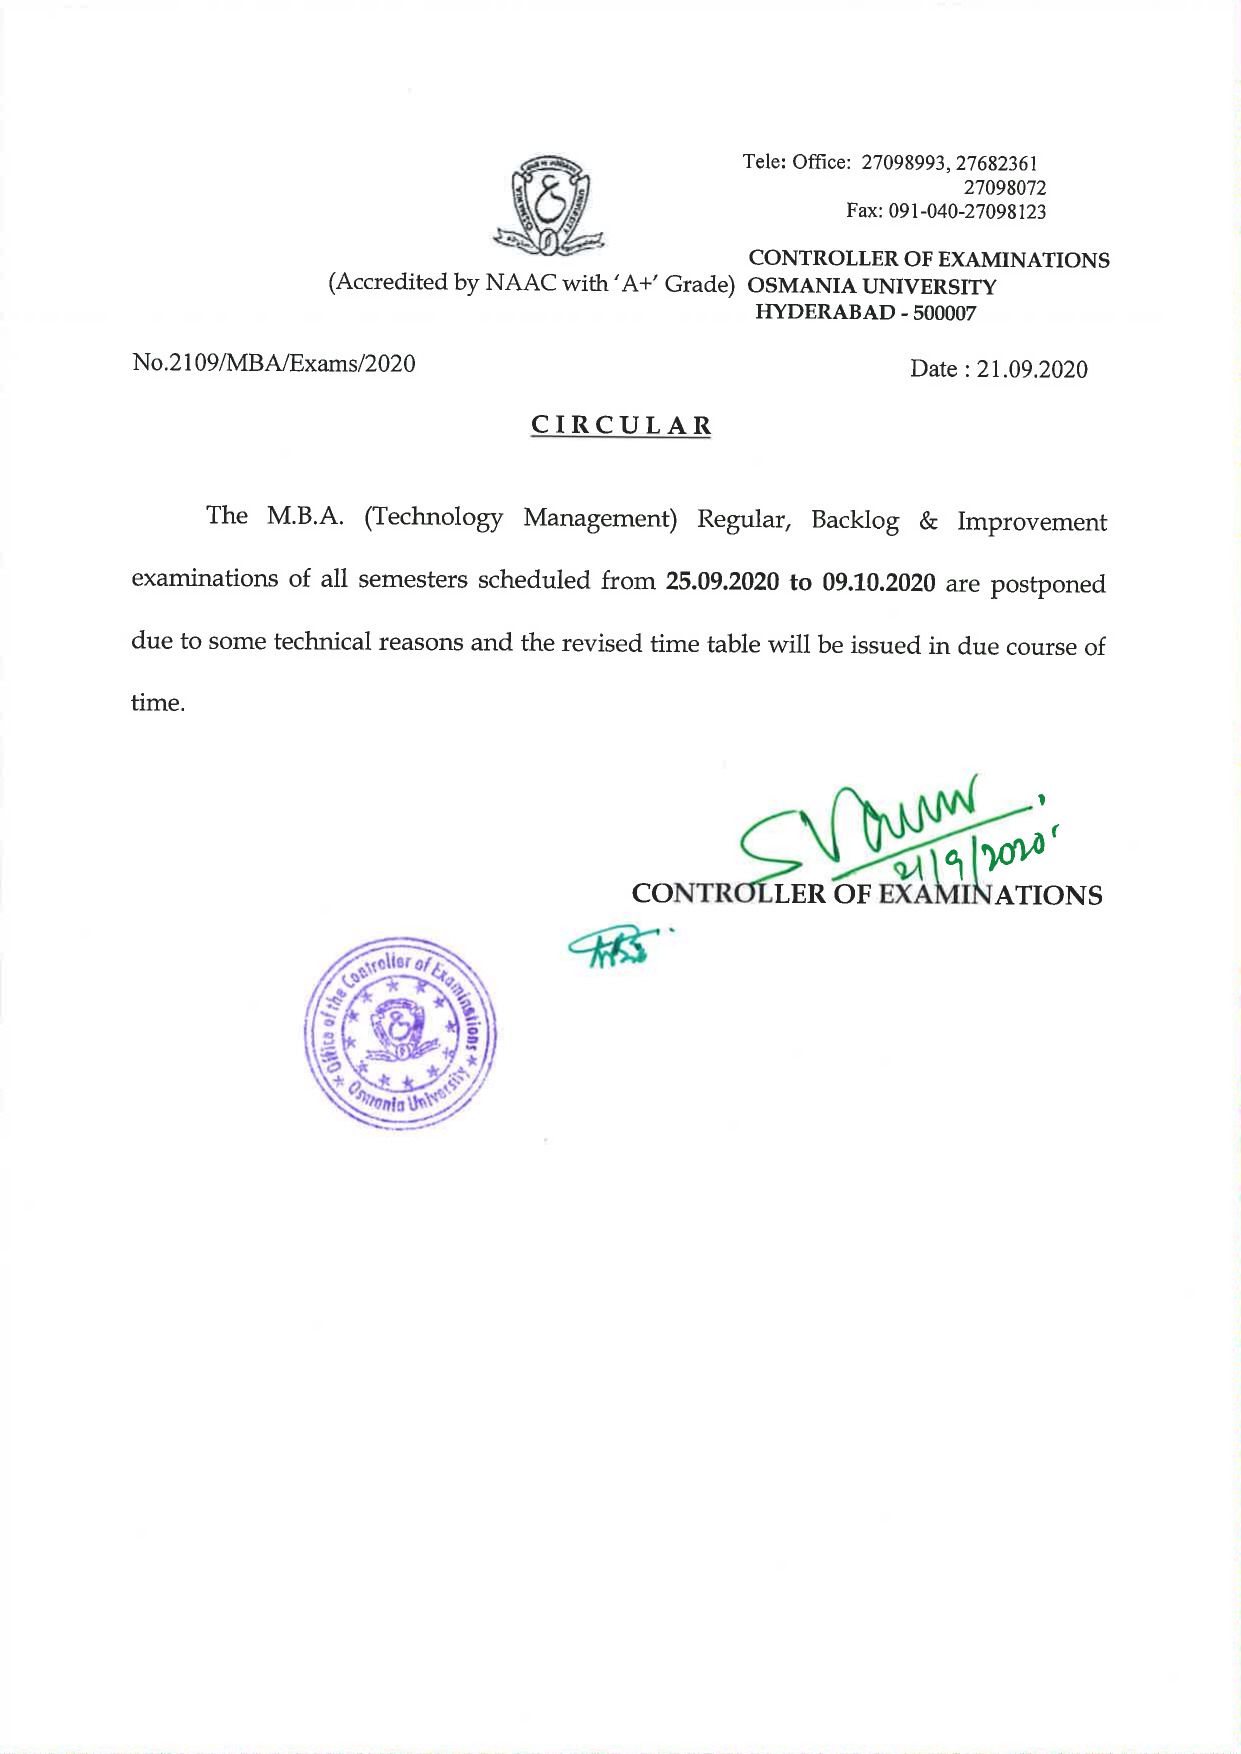 Osmania University MBA (Technology Management) Sep 2020 Postponed Exam Notification